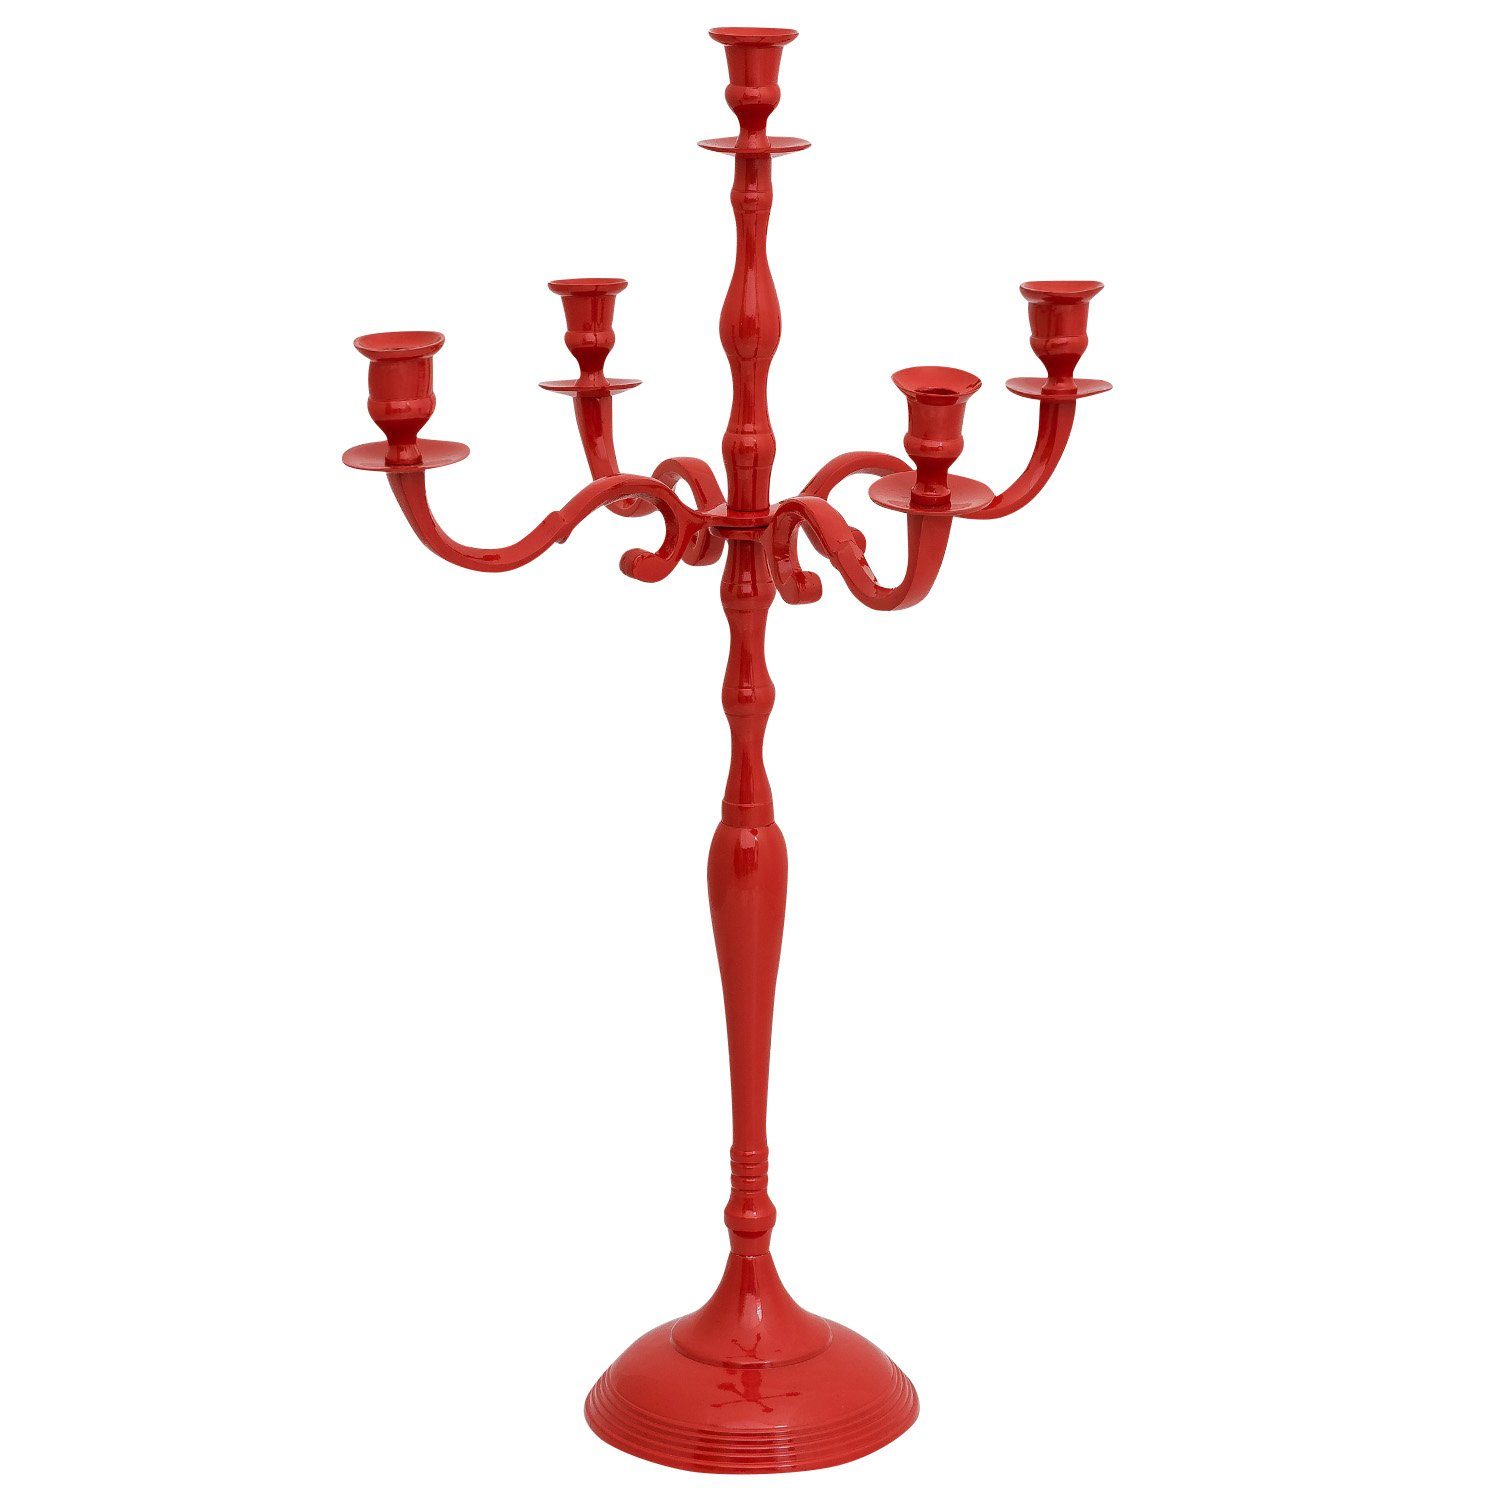 Aubaho Kerzenständer Kerzenhalter Kerzenständer 5-armig Aluminium rot Antik-Stil 78cm